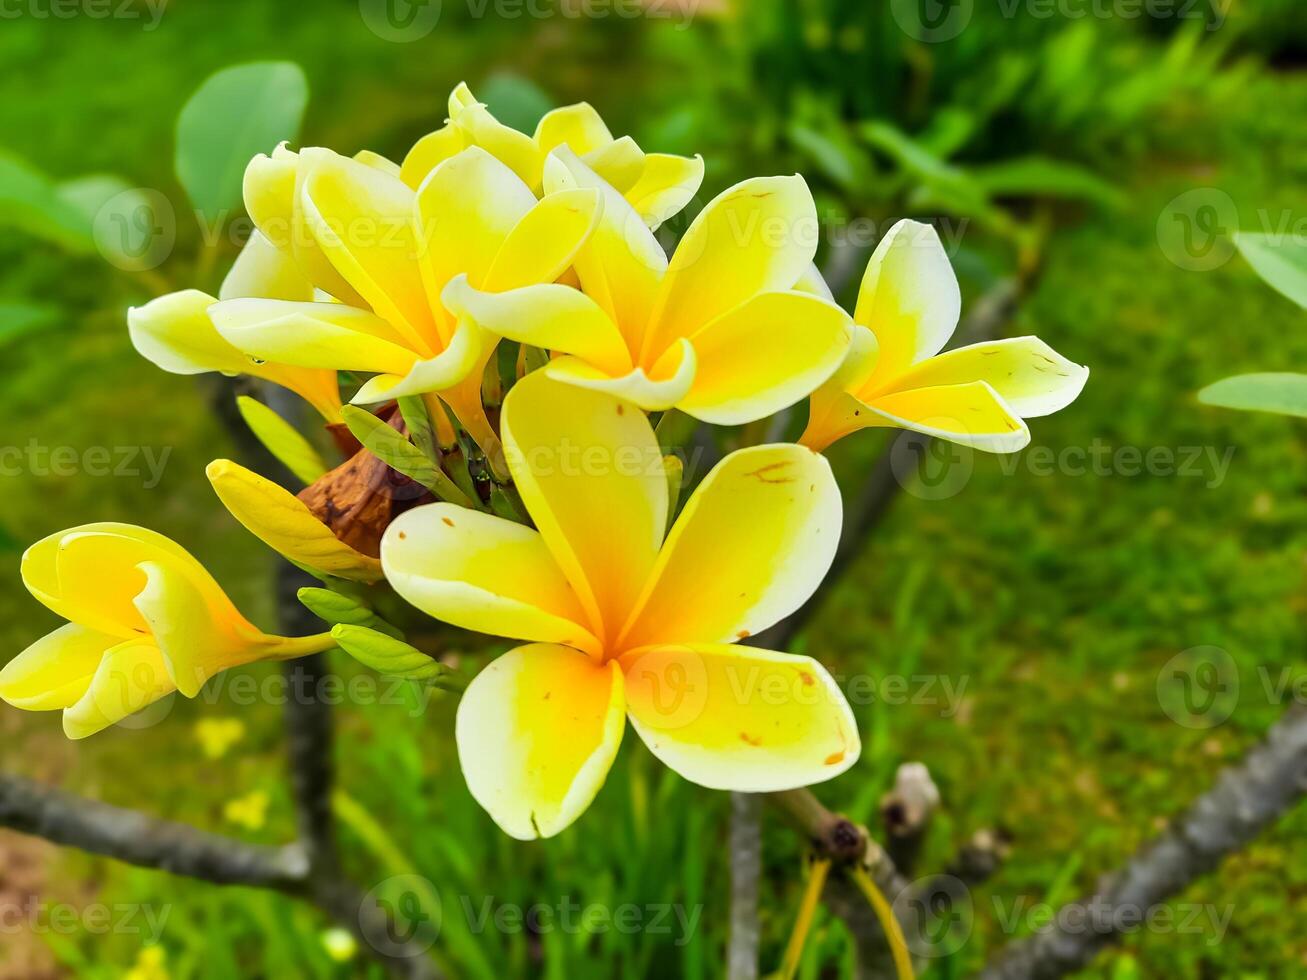 amarelo frangipani flores ou conhecido Como plumeria crescer dentro jardins Como ornamental plantas foto